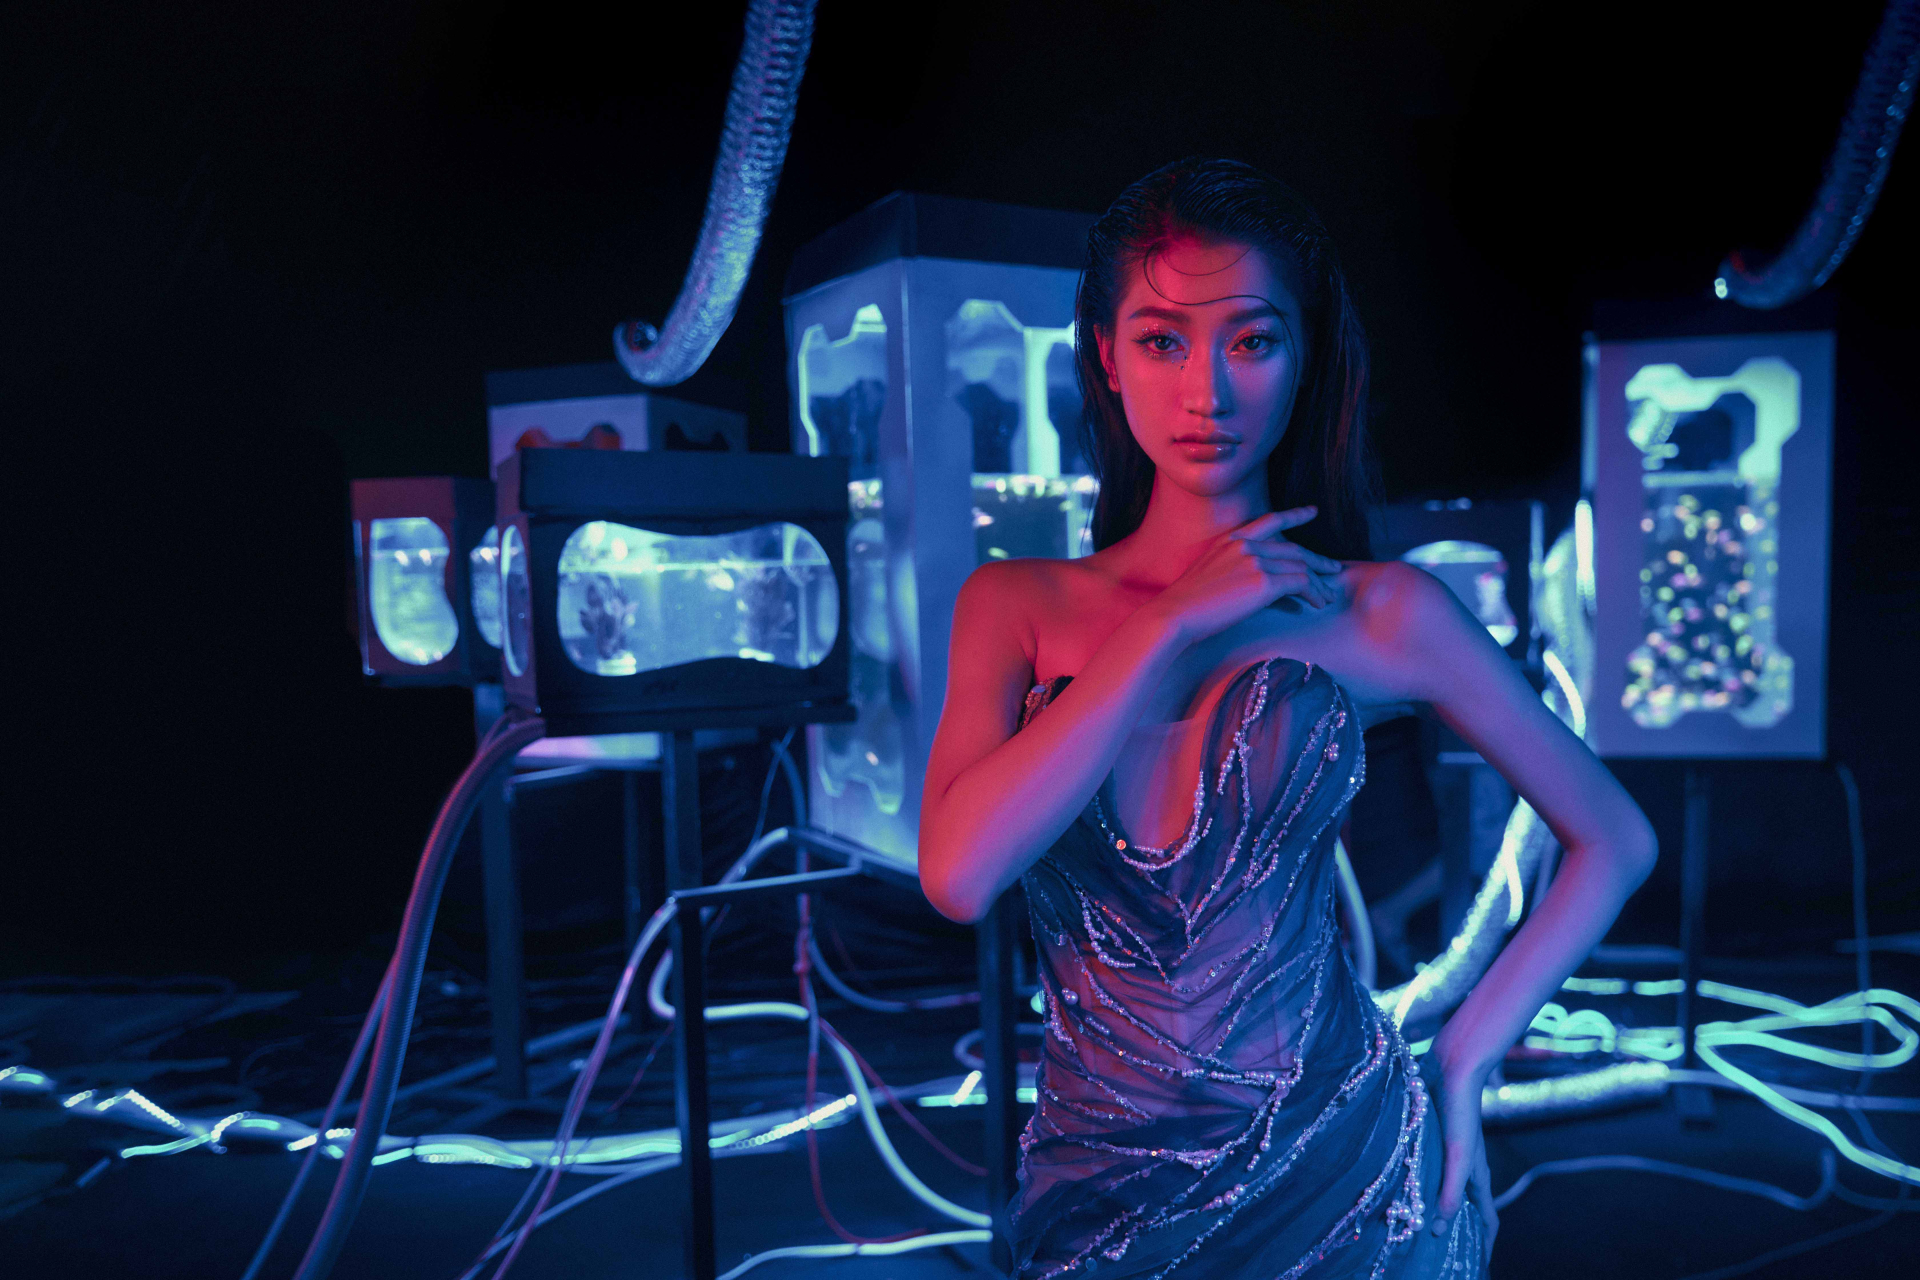 Nữ chính trong MV là “mỹ nhân The Face Vietnam 2023” - Hoàng Kim Ngân, “học trò” của siêu mẫu Anh Thư